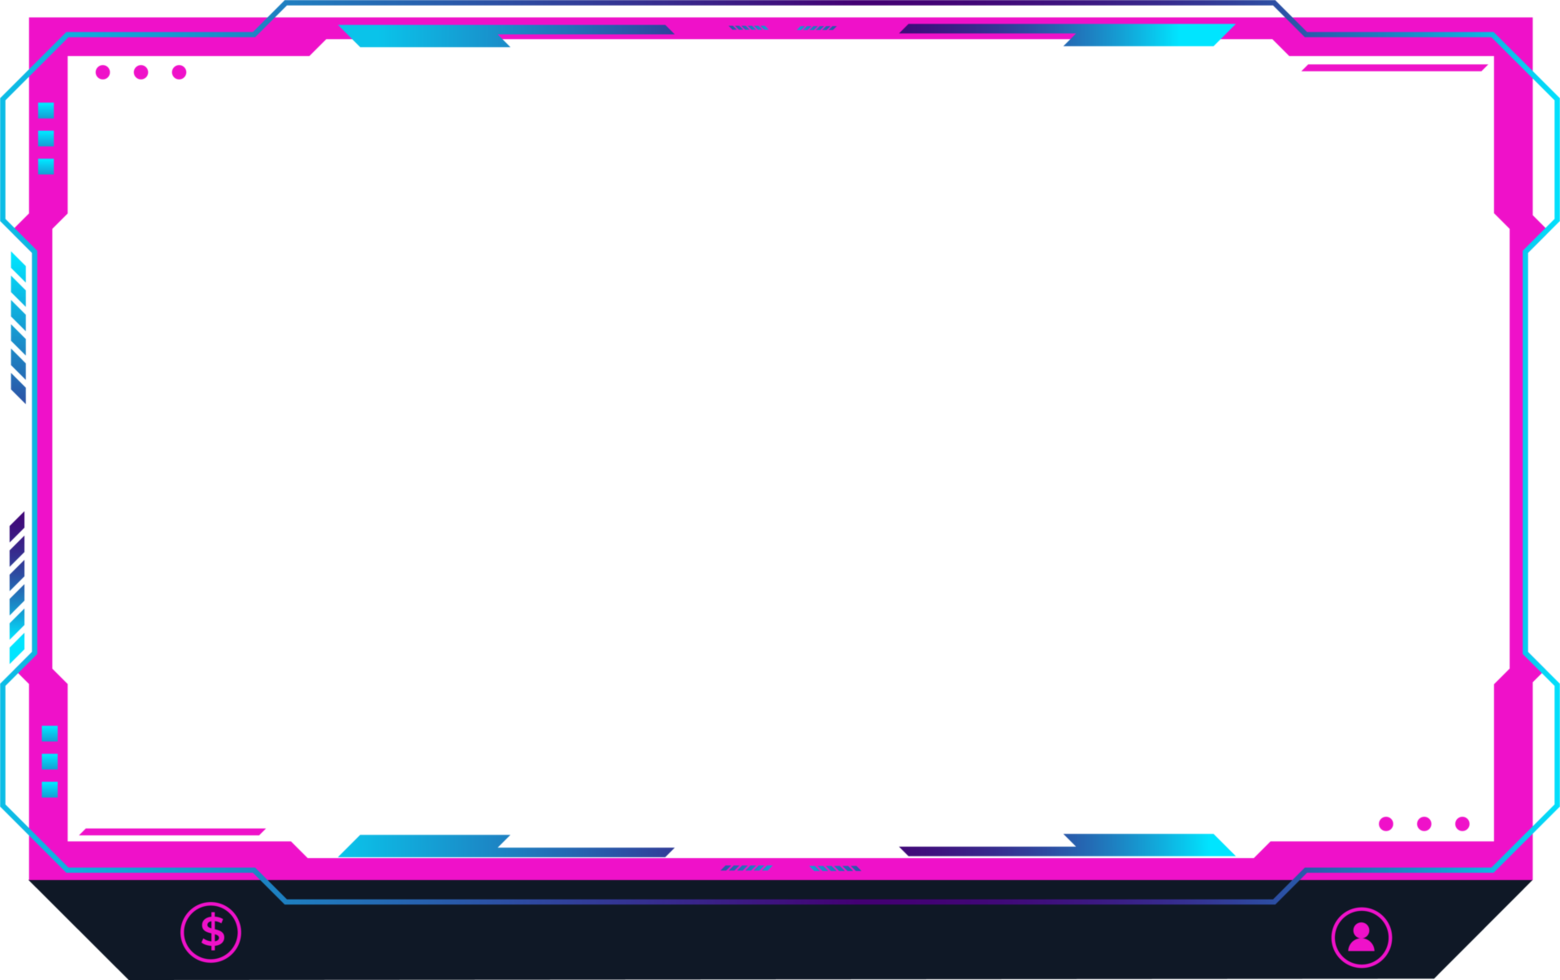 décoration de superposition de diffusion en direct avec des couleurs roses et bleues girly. éléments de diffusion en direct avec des boutons colorés. panneau d'écran de jeu en ligne et bordure png pour les joueurs.